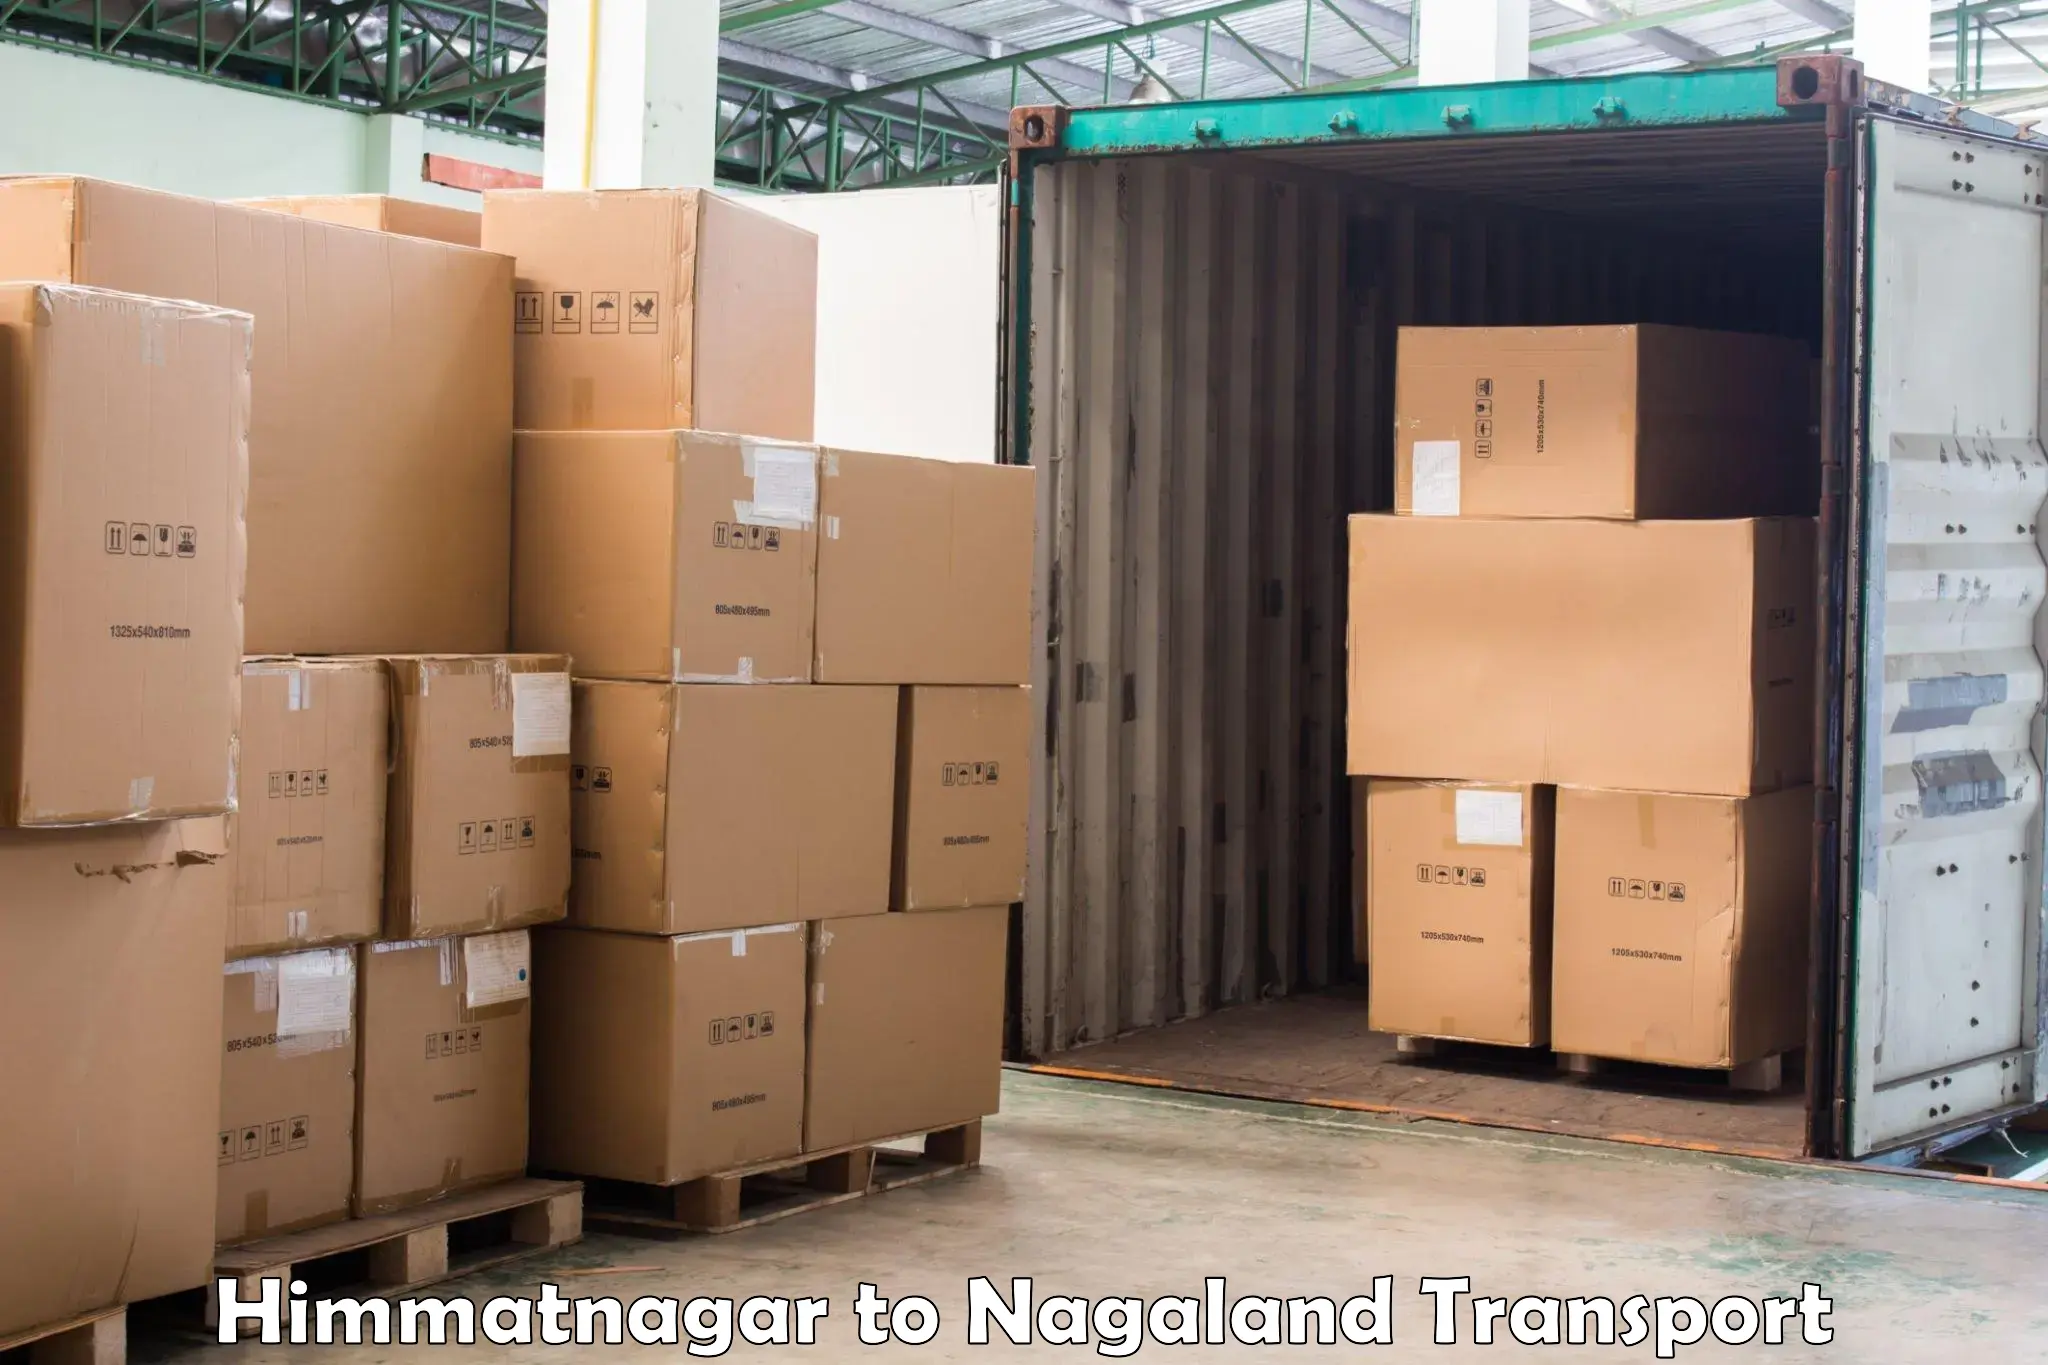 Online transport service Himmatnagar to Nagaland